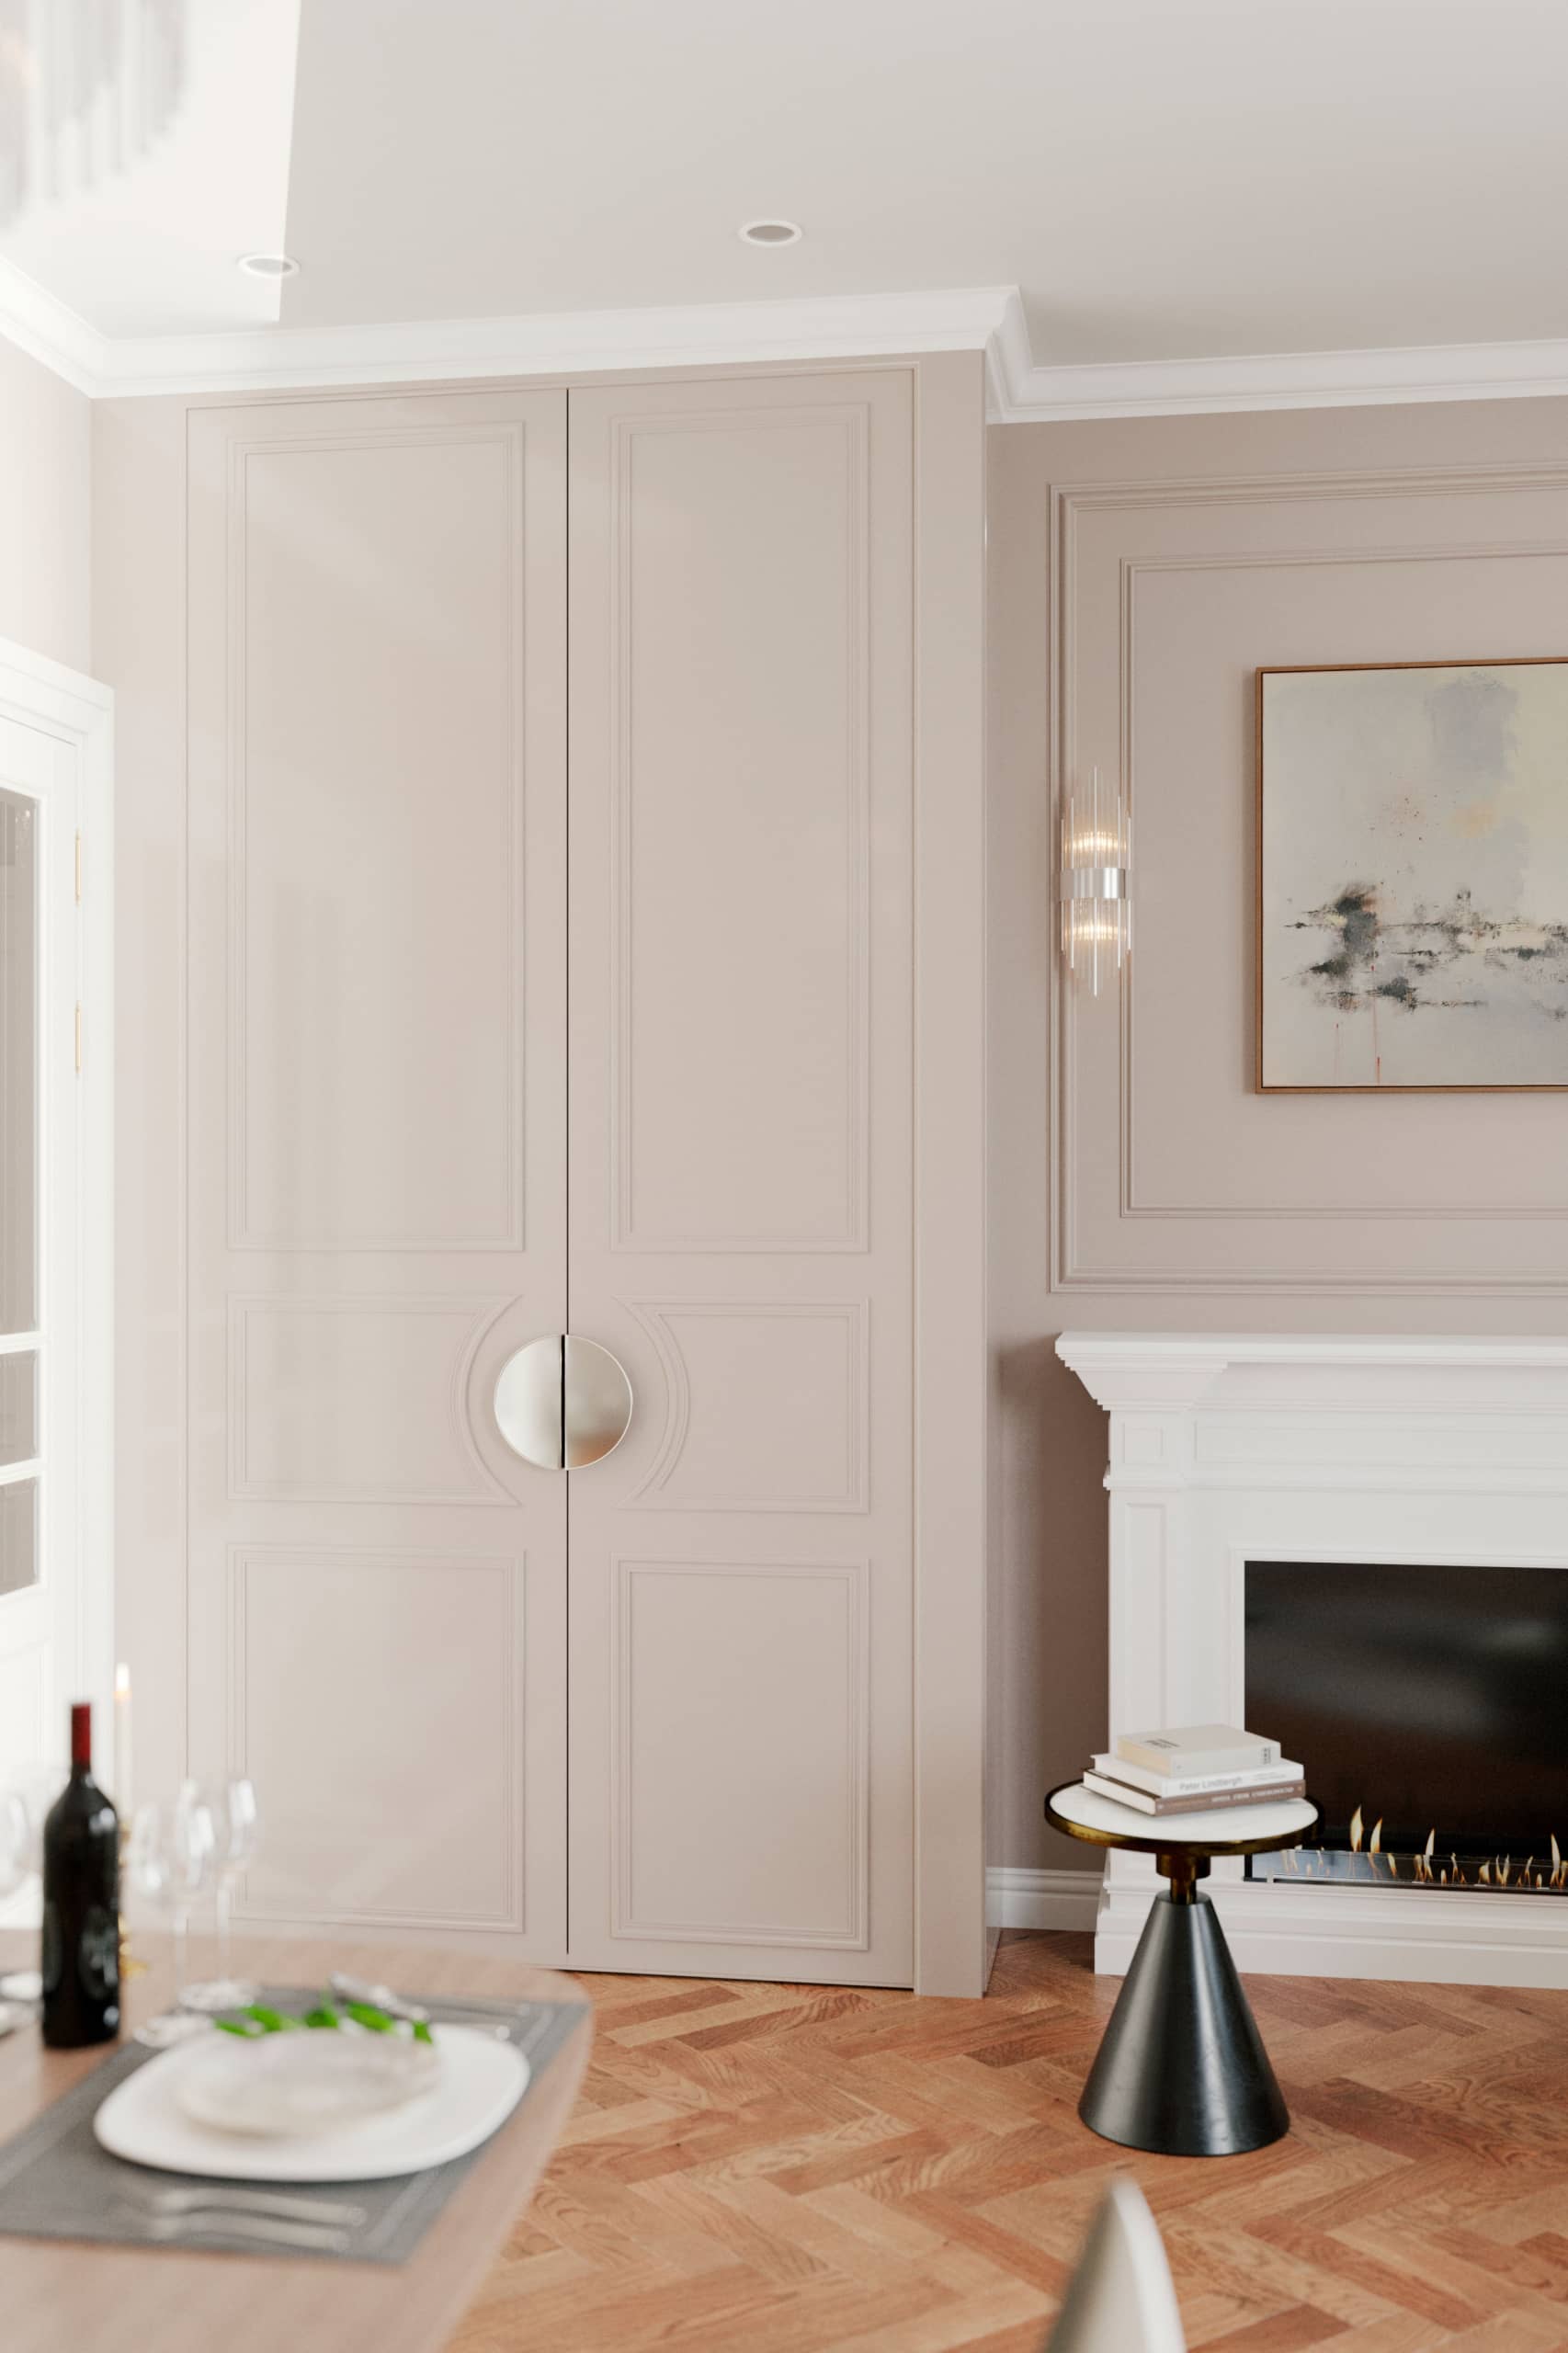 Оформление интерьера гостиной трехкомнатной квартиры в коричневый цвет в стиле современной классики. Фото № 62286.